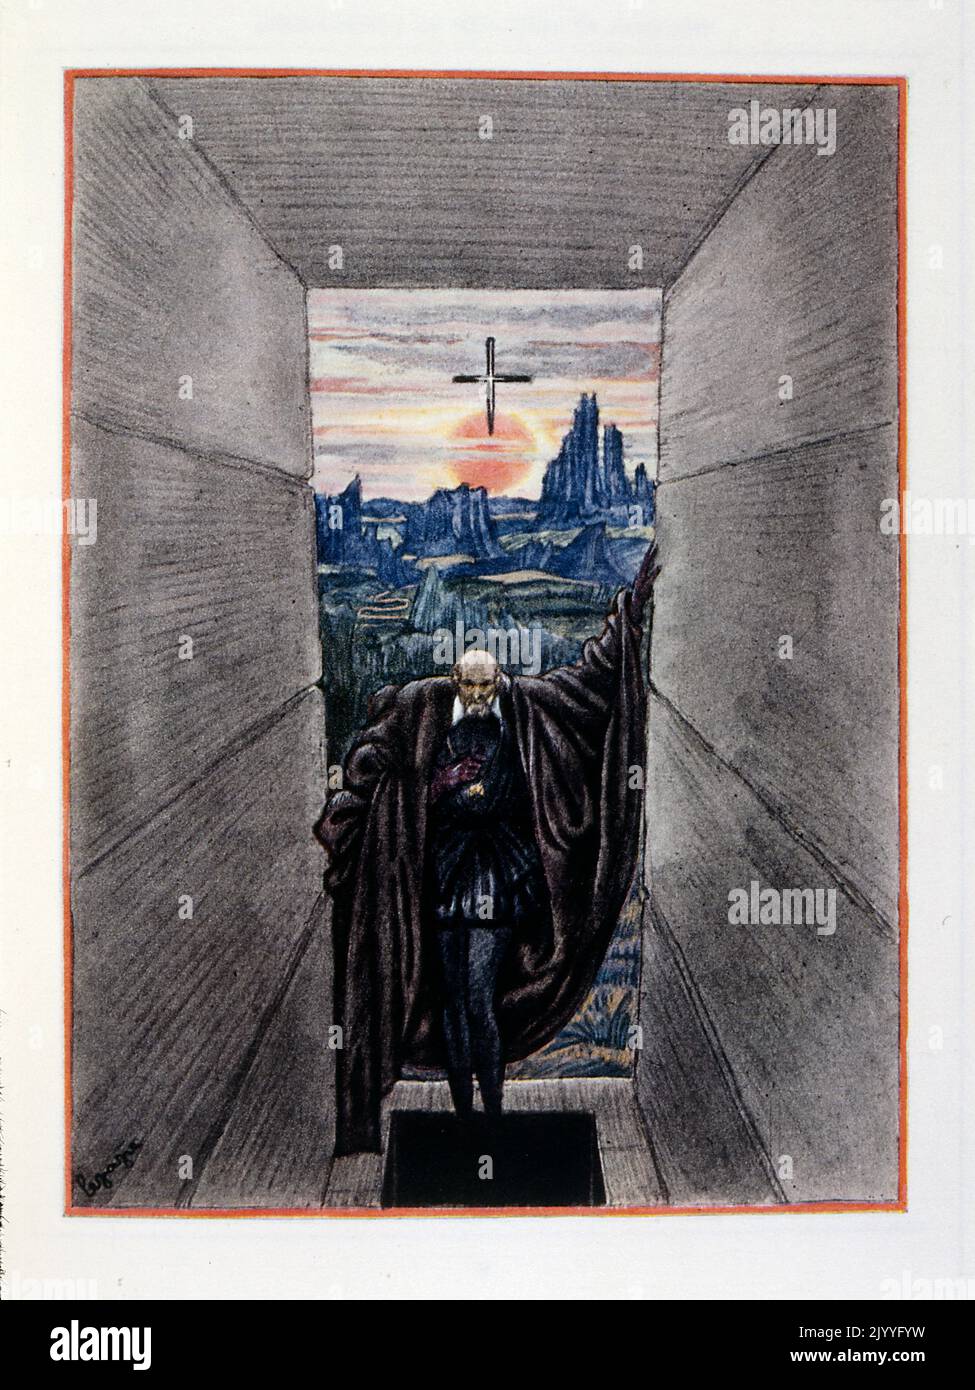 Farbige Illustration aus 'oeuvres posthumes' von Alfred de Musset, die einen getarbenen Mann zeigt, der in einen Korridor am Himmel geht. Illustriert von Georges Lepape. Stockfoto